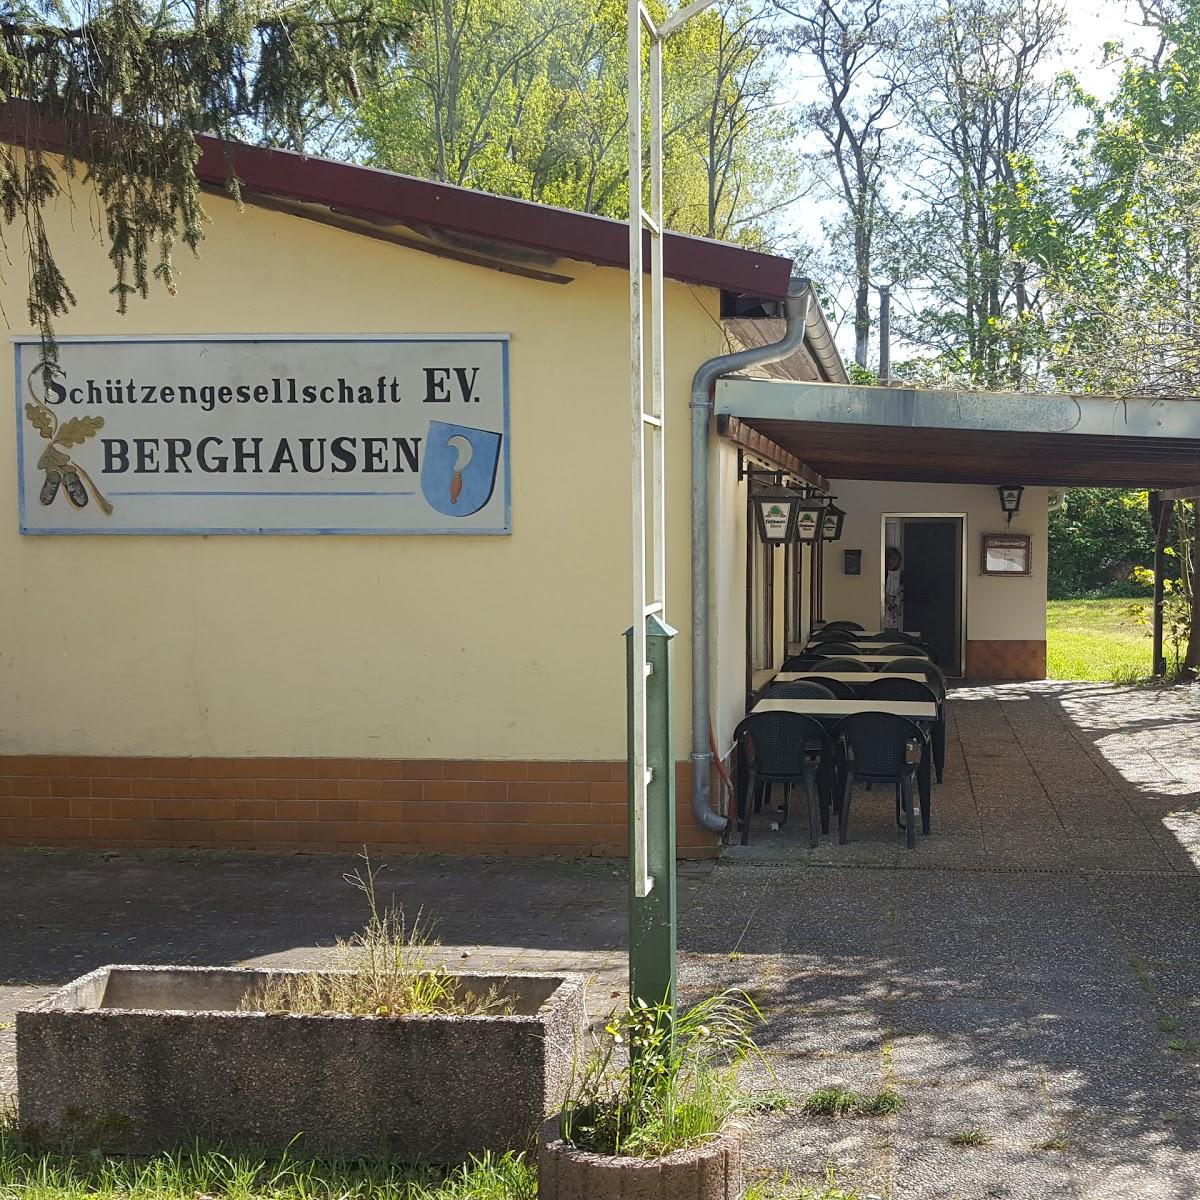 Restaurant "Schützenhaus Berghausen" in Römerberg